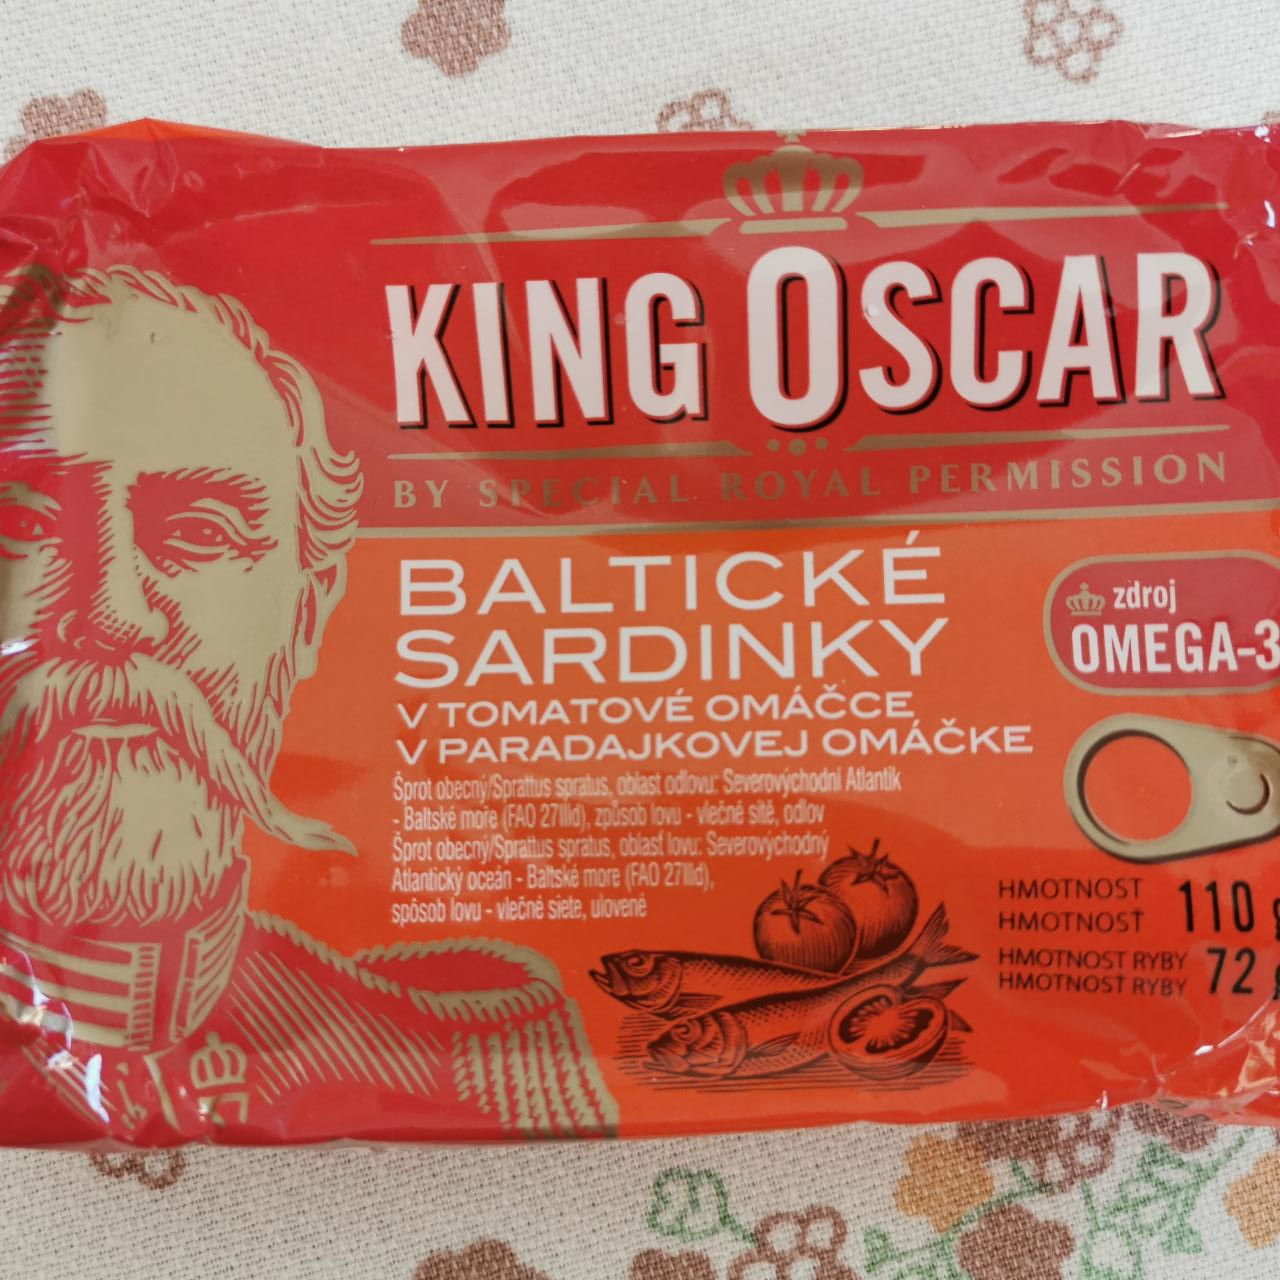 Fotografie - Baltické sardinky v paradajkovej omáčke King Oscar